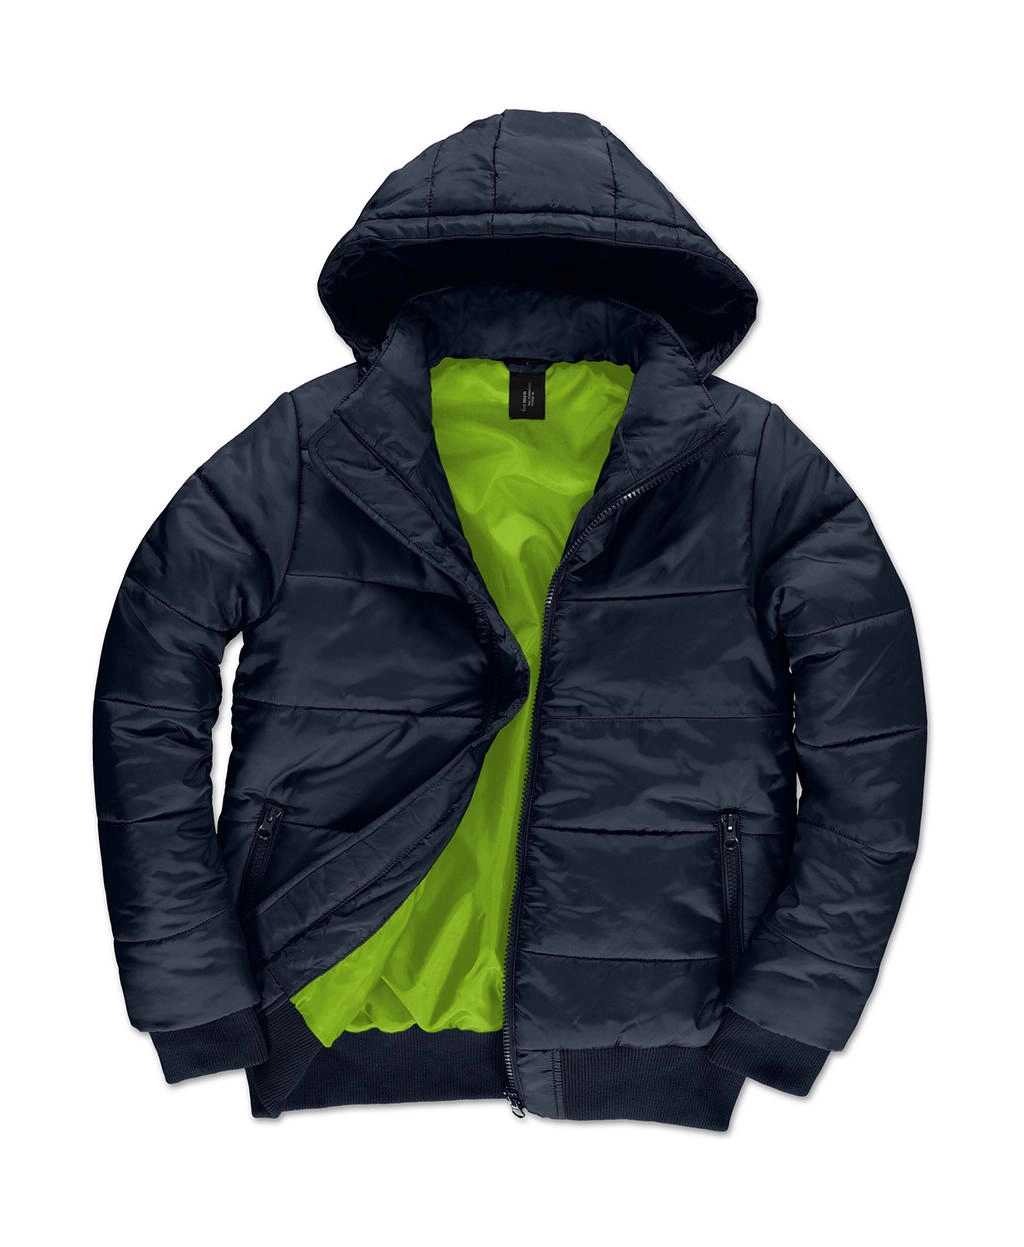 Superhood/men Jacket zum Besticken und Bedrucken in der Farbe Navy/Neon Green mit Ihren Logo, Schriftzug oder Motiv.